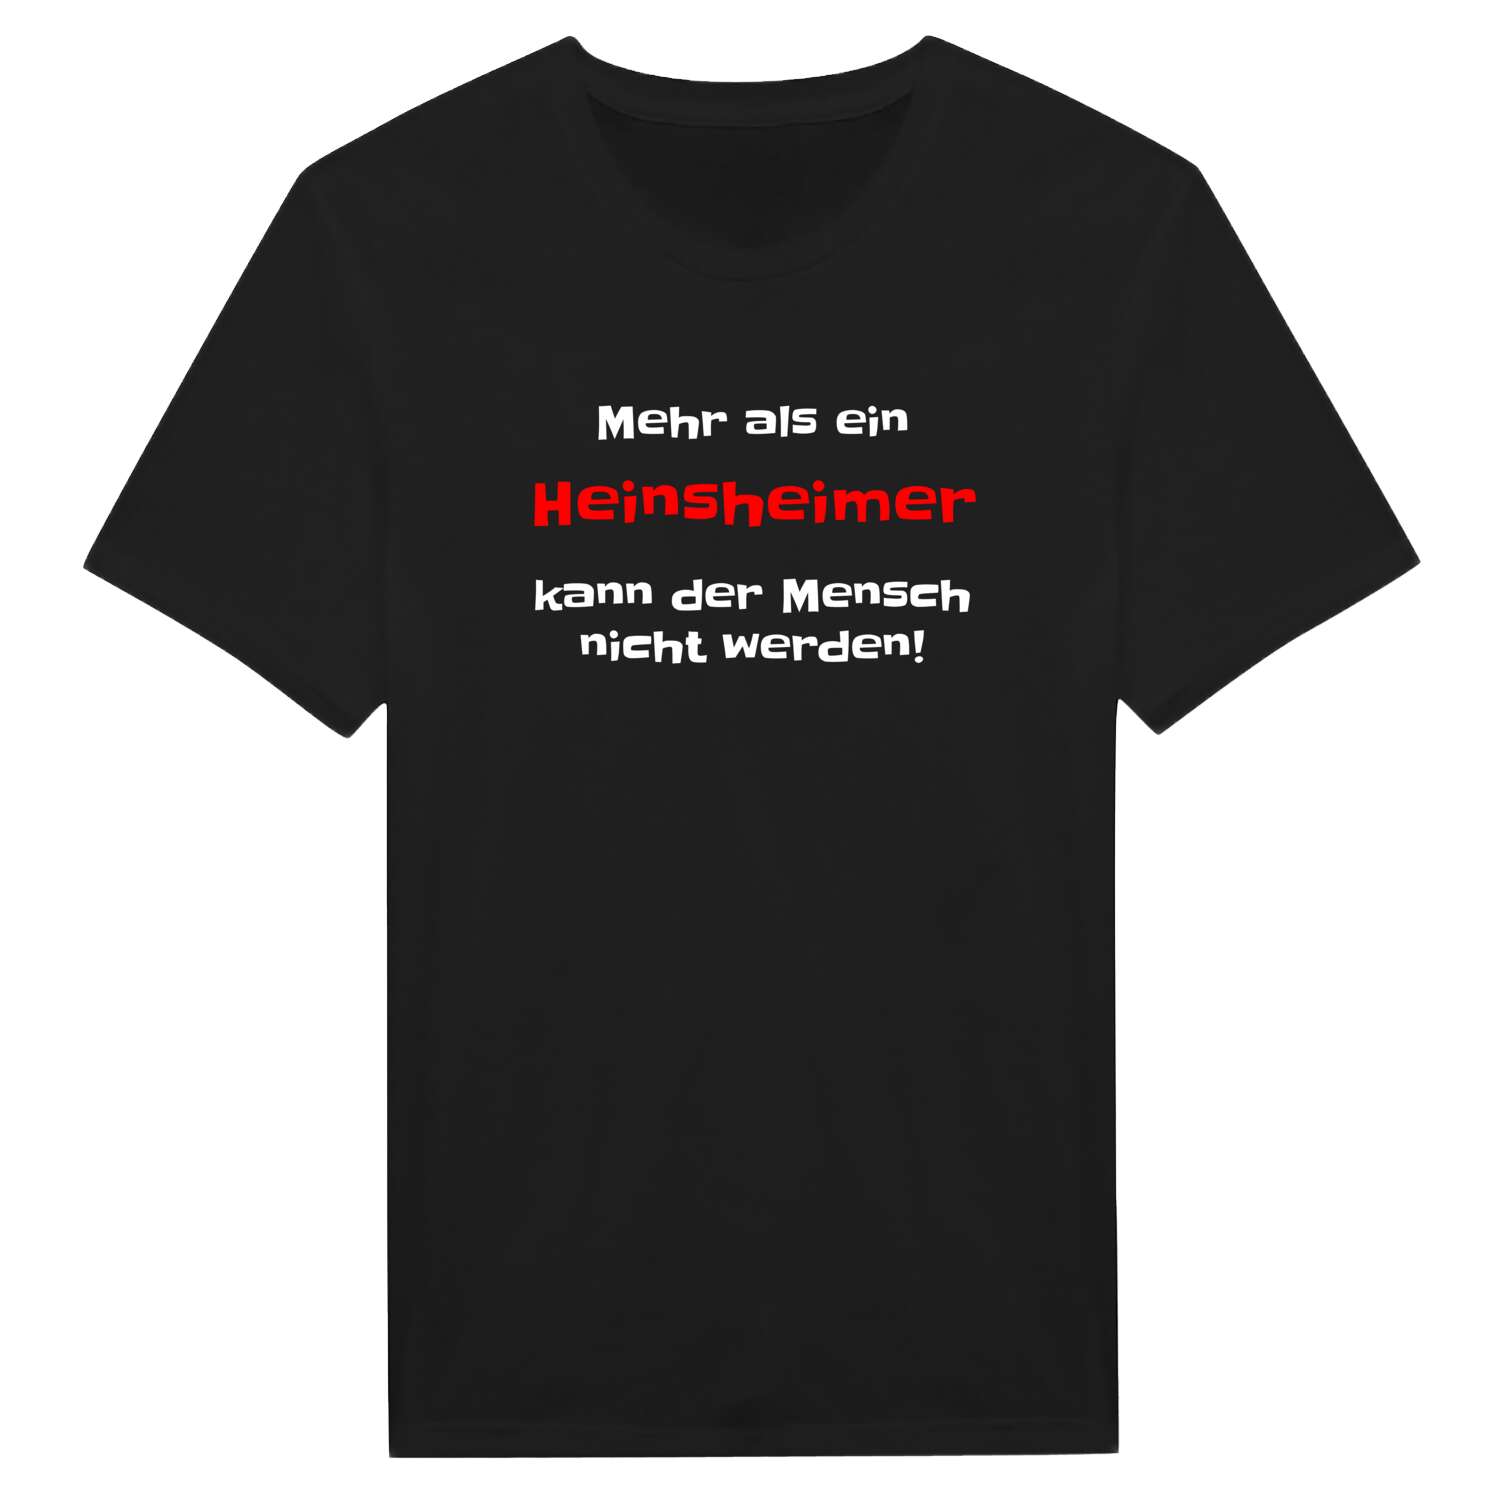 Heinsheim T-Shirt »Mehr als ein«